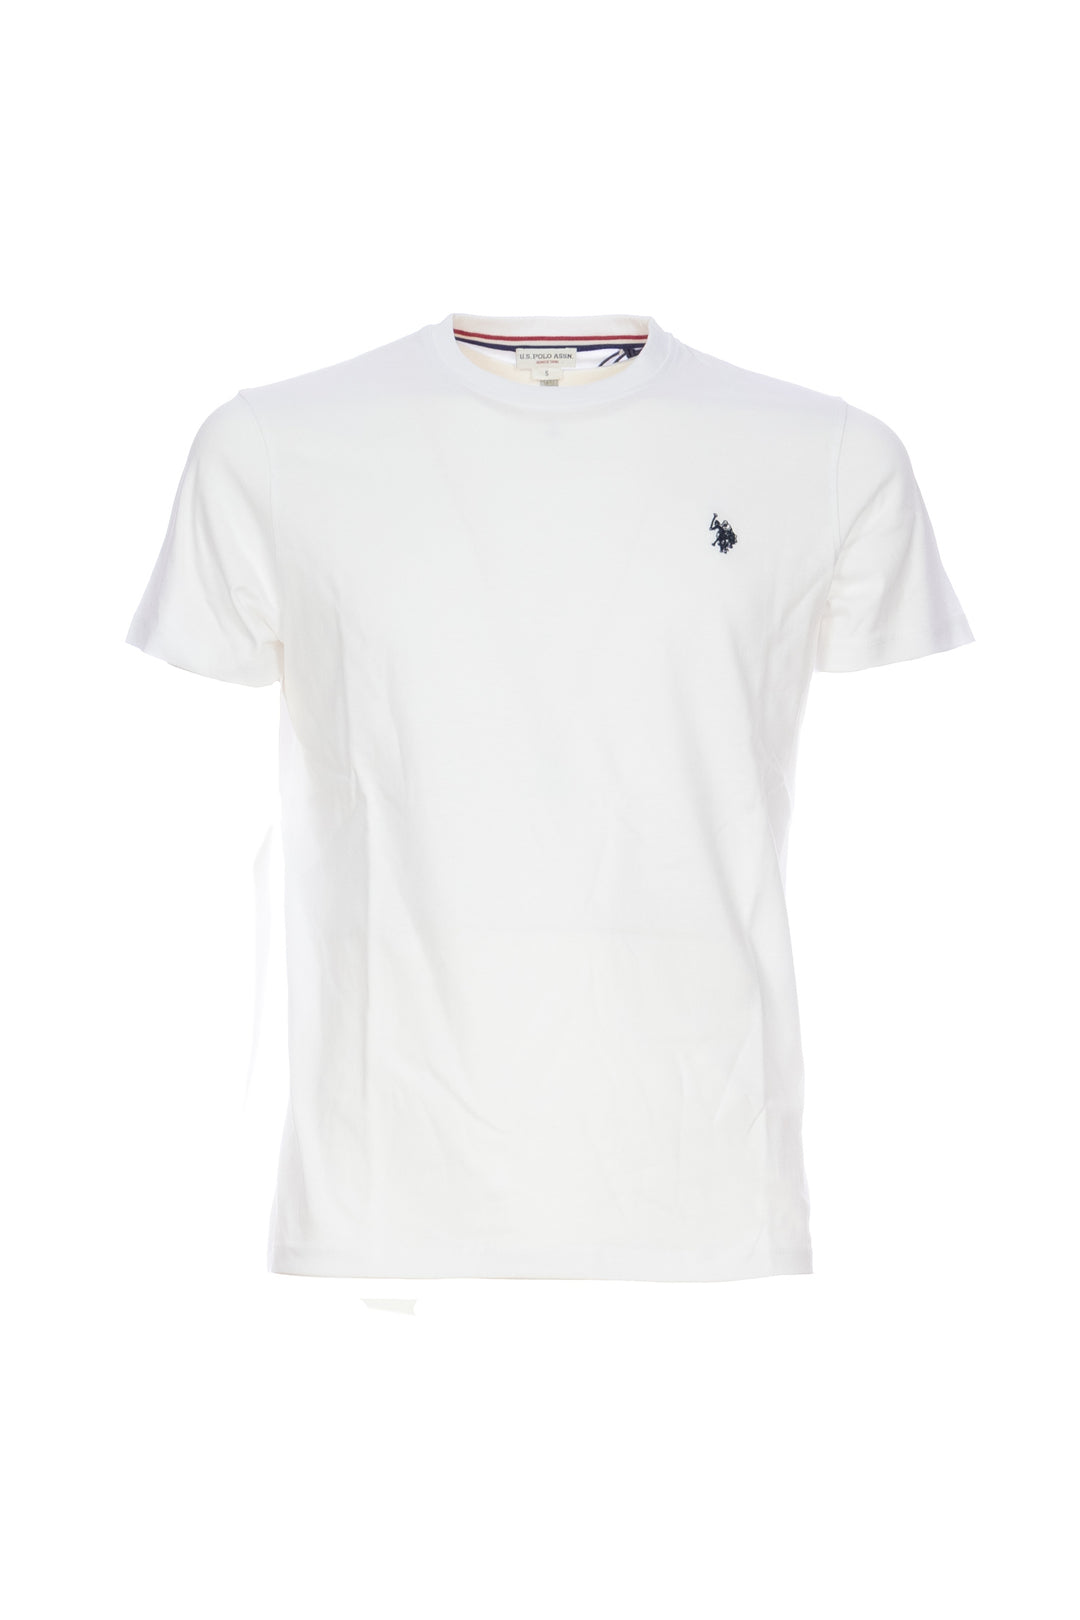 U.S. POLO ASSN. T-shirt bianca in cotone con logo ricamato sul petto - Mancinelli 1954